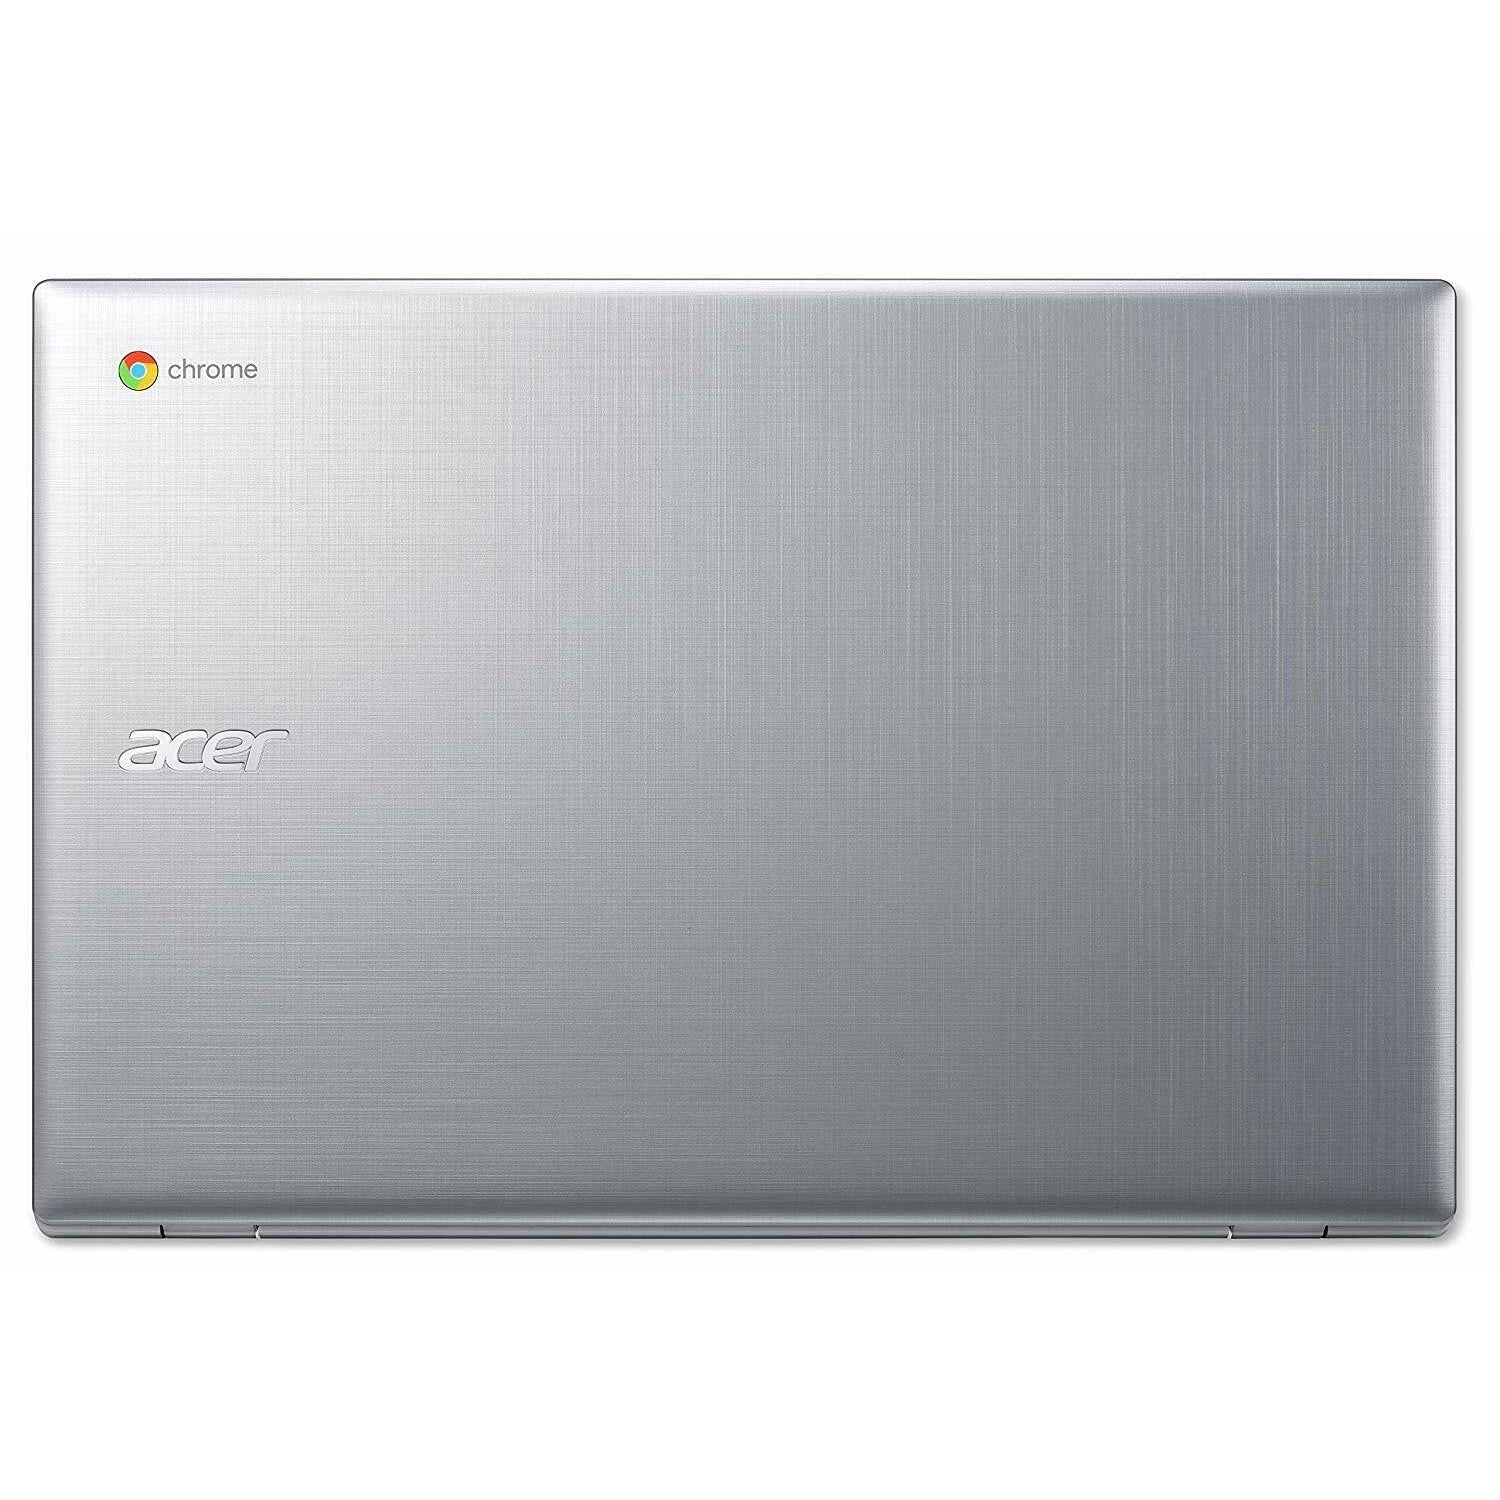 Acer CB315-2H-66VC, AMD A6-9220C, 4GB RAM, 64GB eMMC, 15.6" Silver (NX.H8SEK.003) - Refurbished Excellent